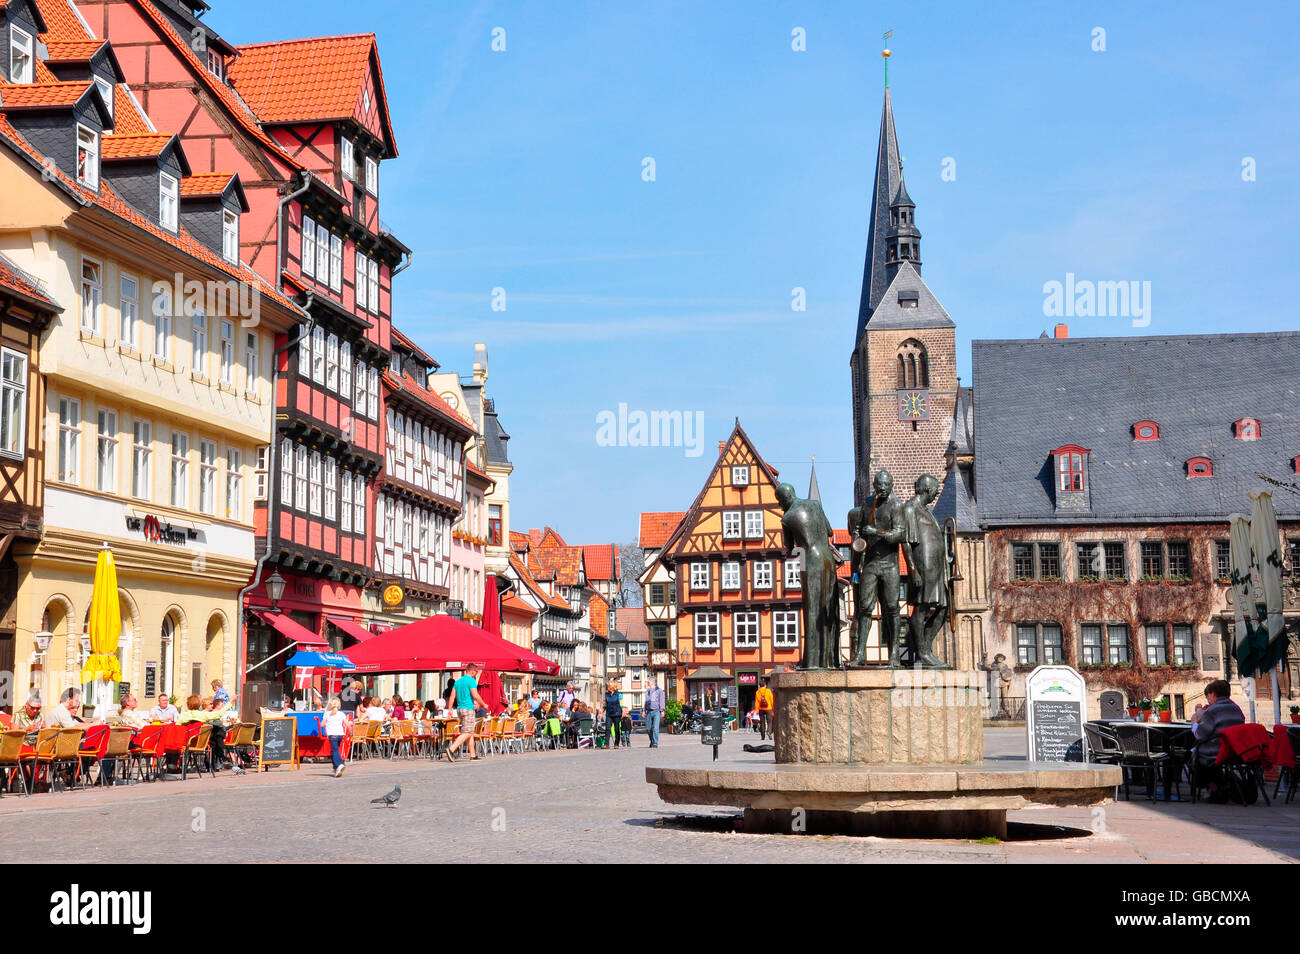 Marktplatz, Quedlinburg, Sachsen-Anhalt, Deutschland Stock Photo